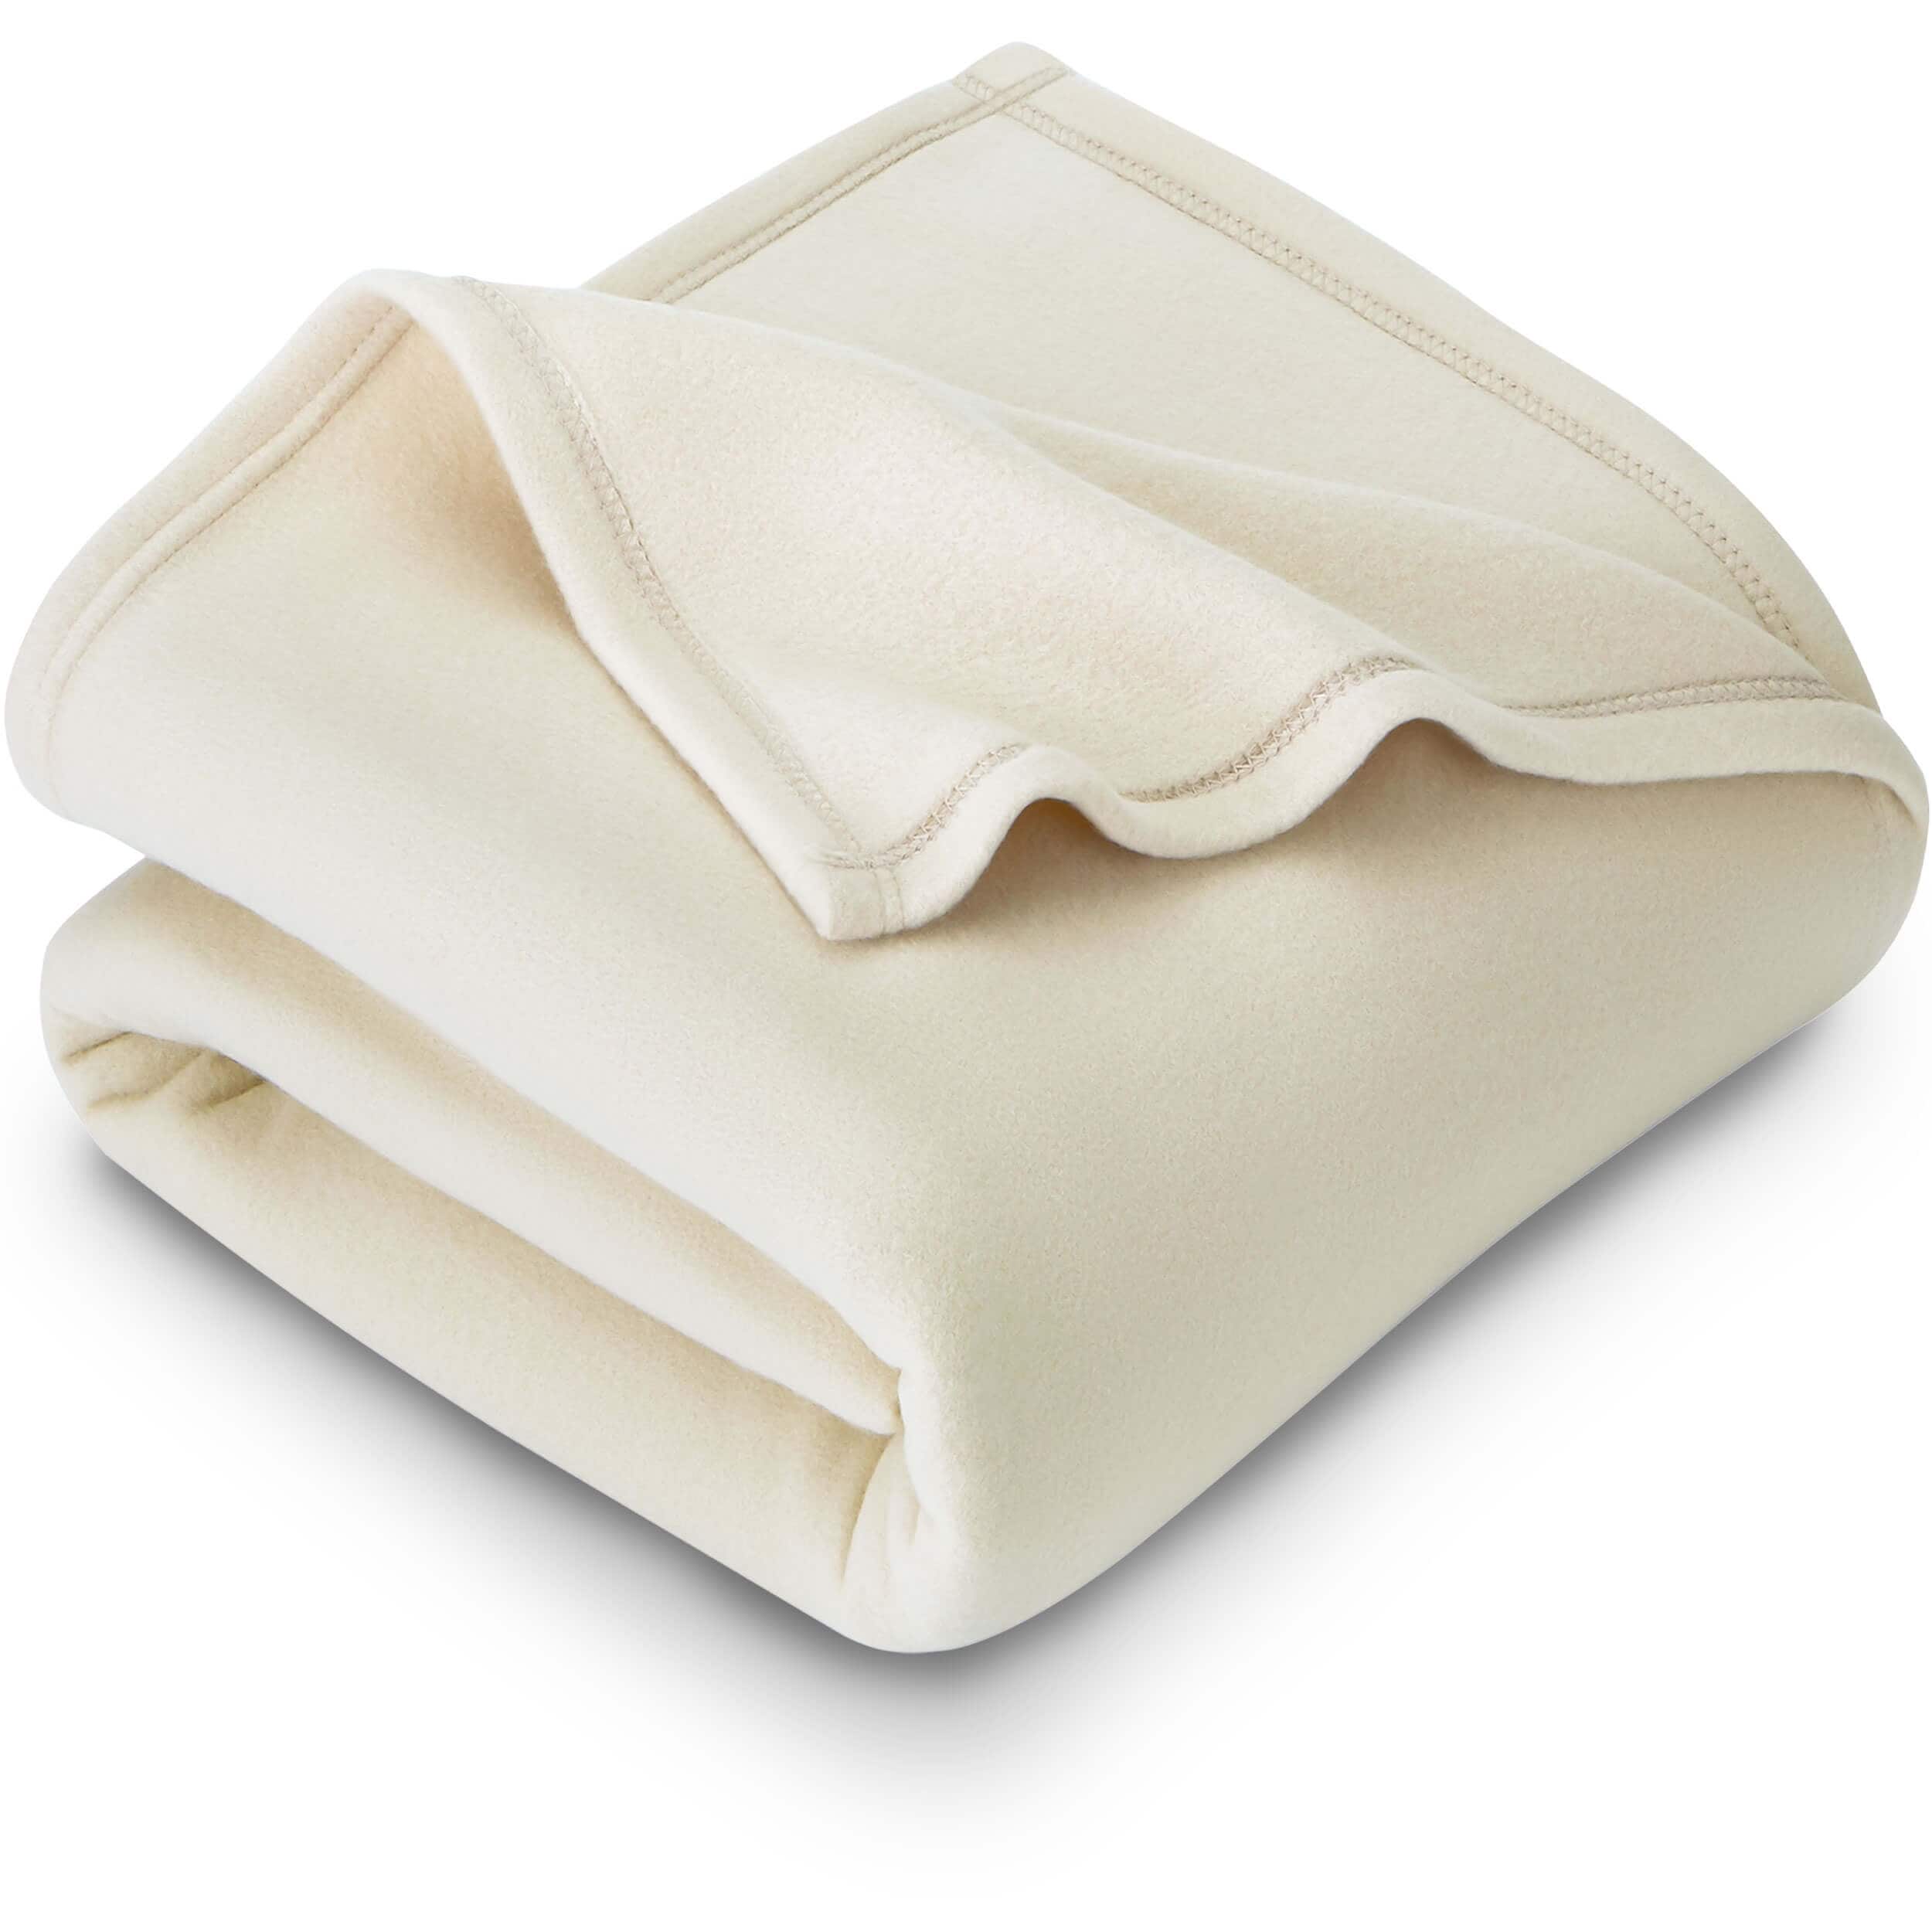 Bare Home Polar Fleece Blanket Warm Cozy Lightweight Bed Blanket Overstock 15958523